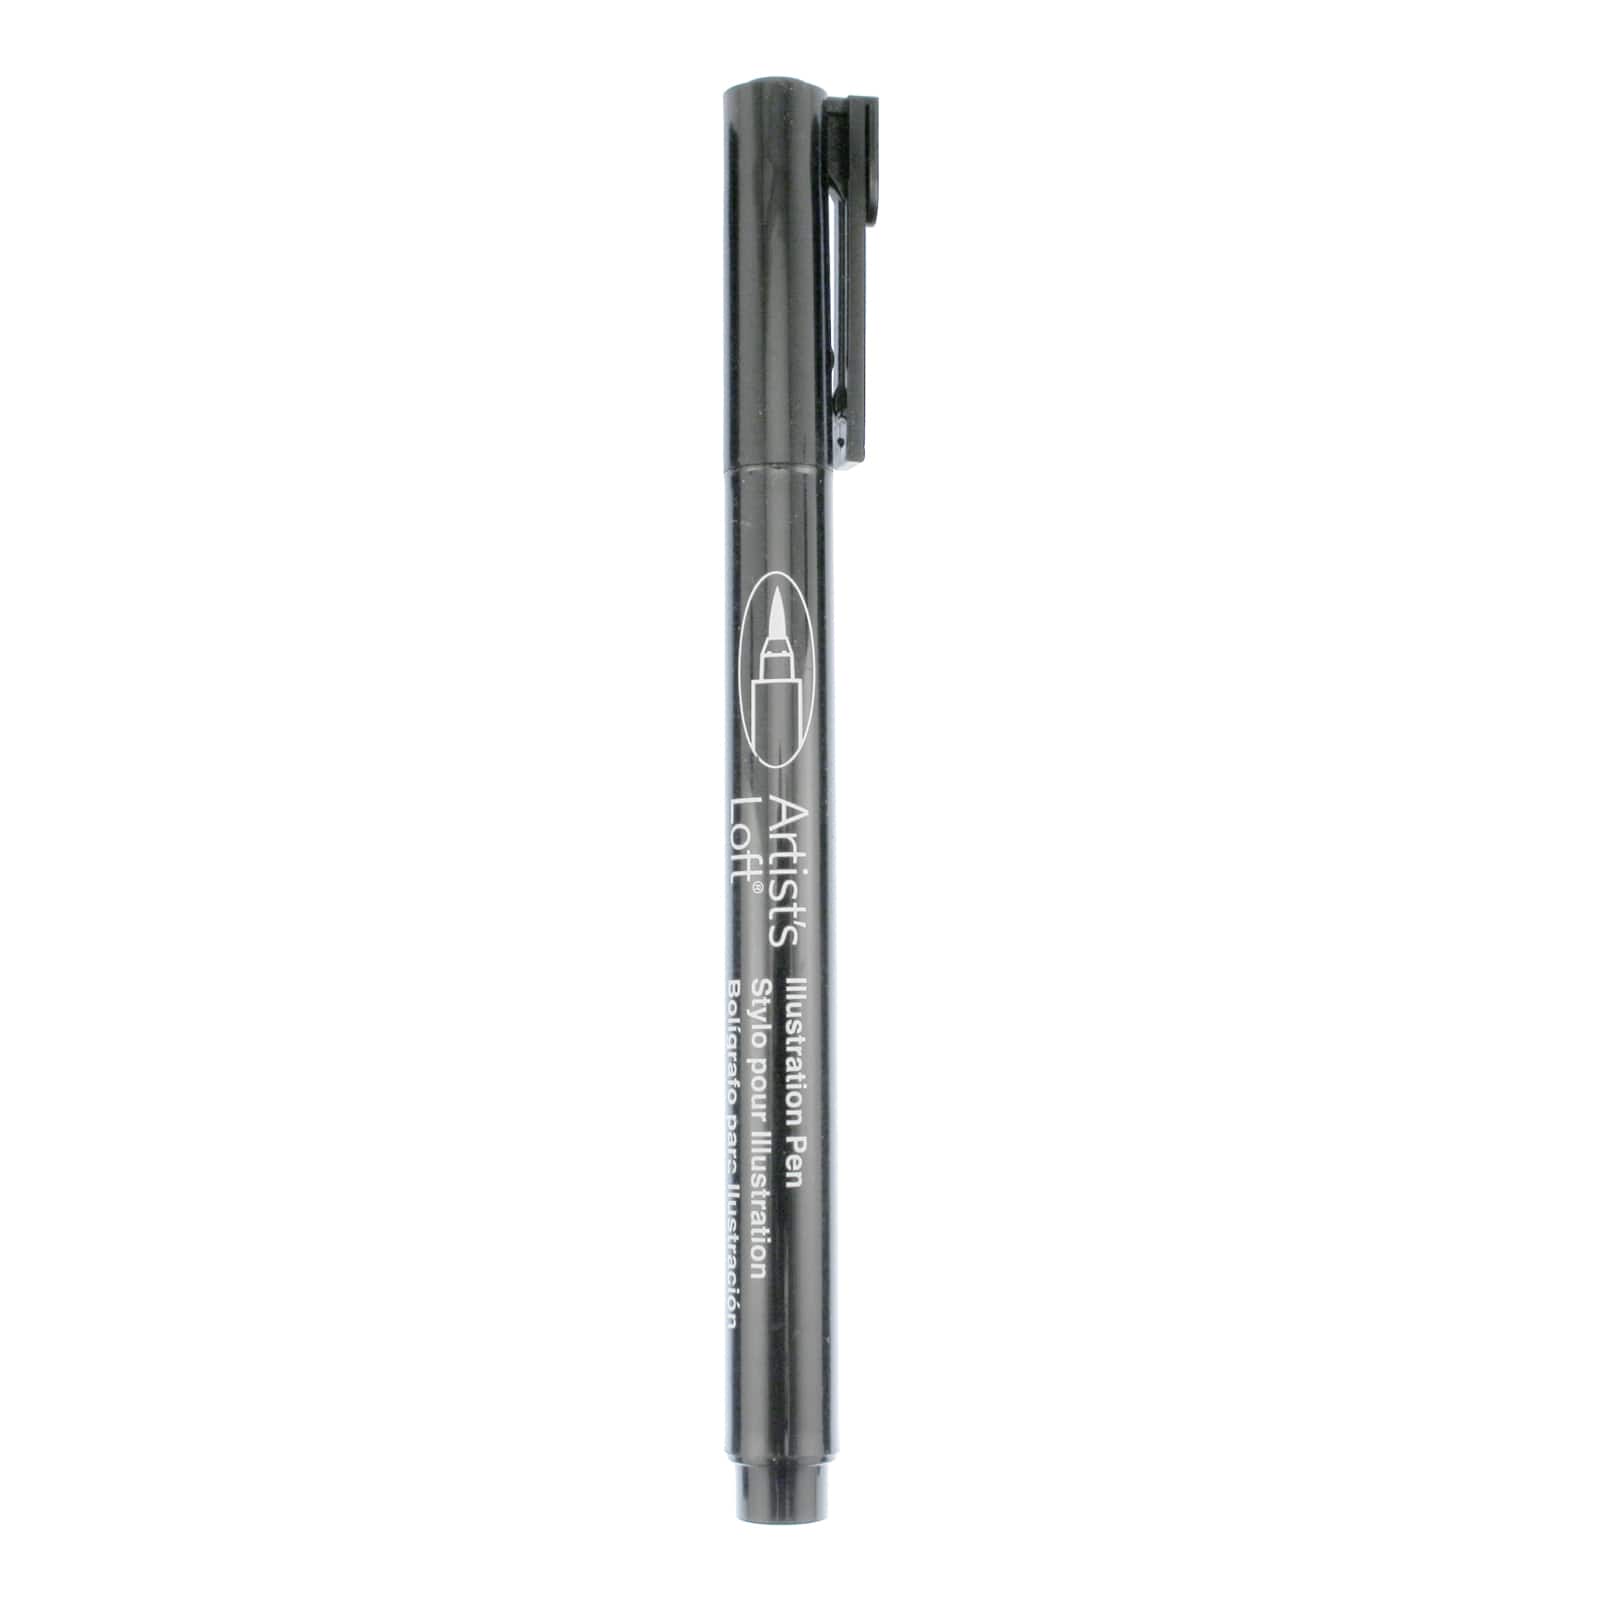 12 Pack: Black Brush Tip Illustration Pen by Artist&#x27;s Loft&#xAE;